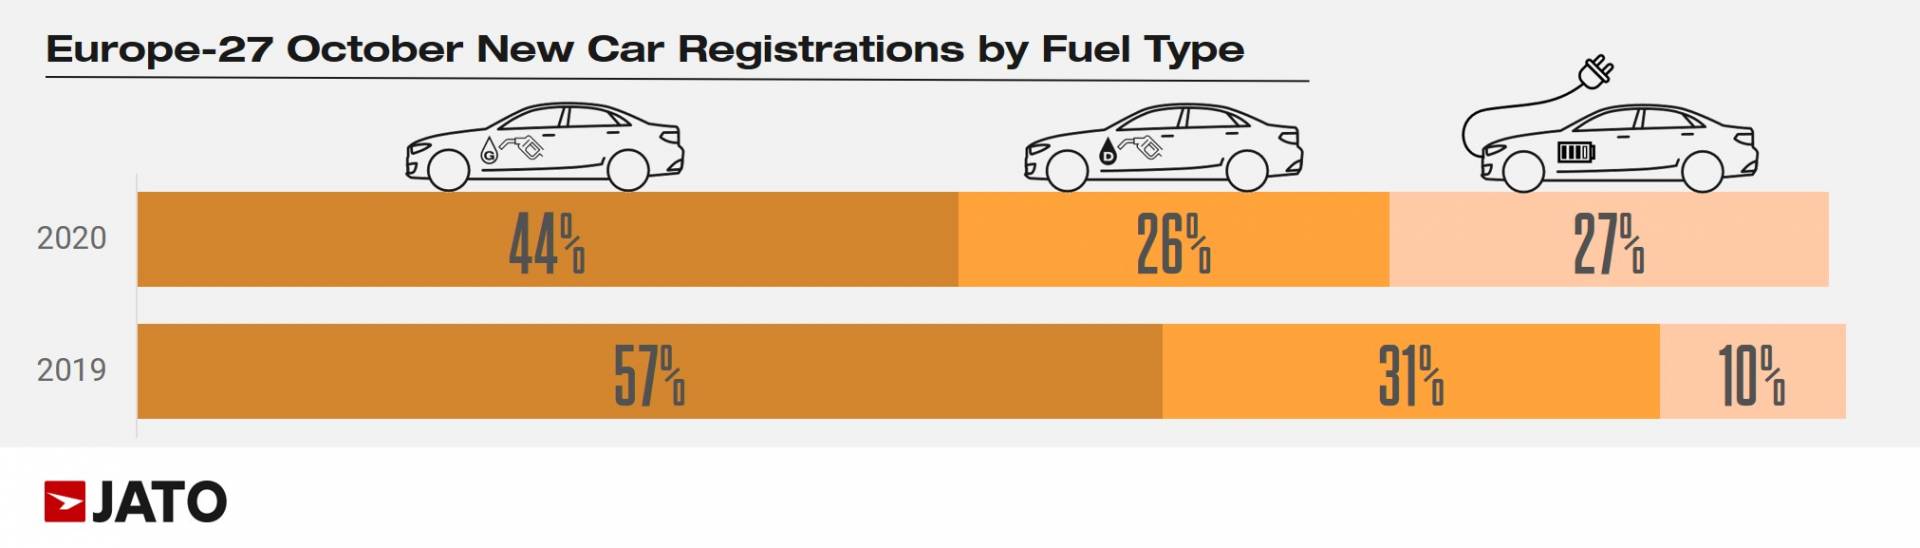 újautó-regisztráció megoszlása Európában 2019-ben és 2020-ban üzemanyagtípus szerint